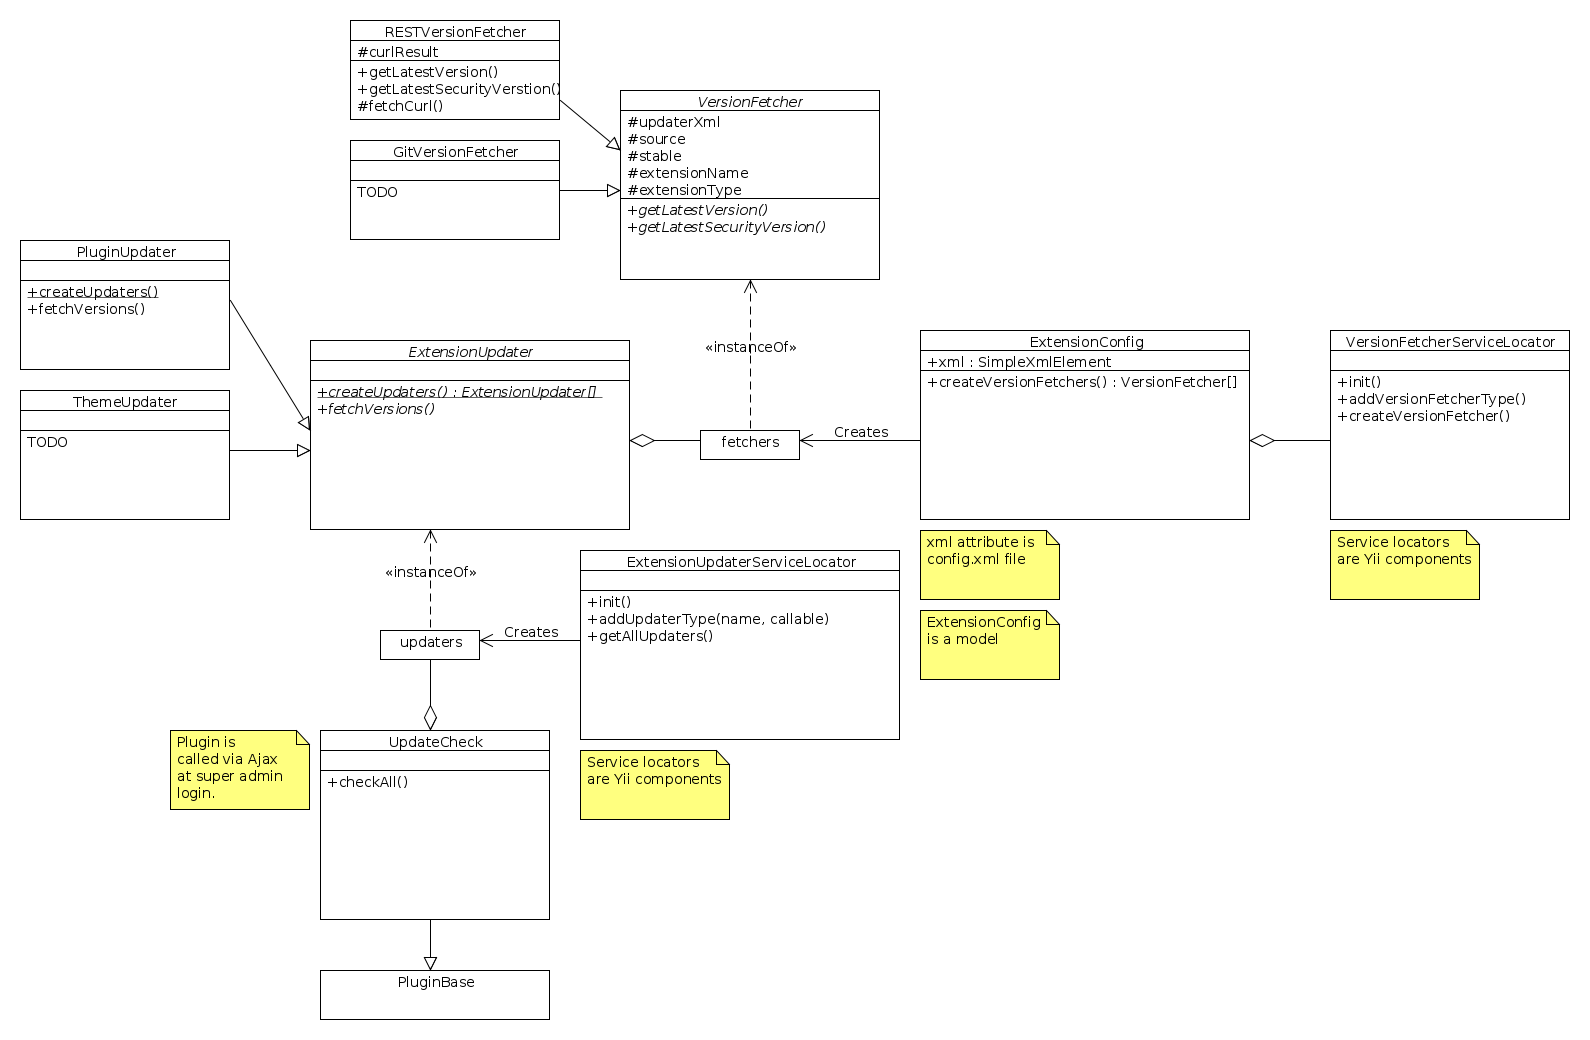 Diagramma UML di aggiornamento dell'estensione